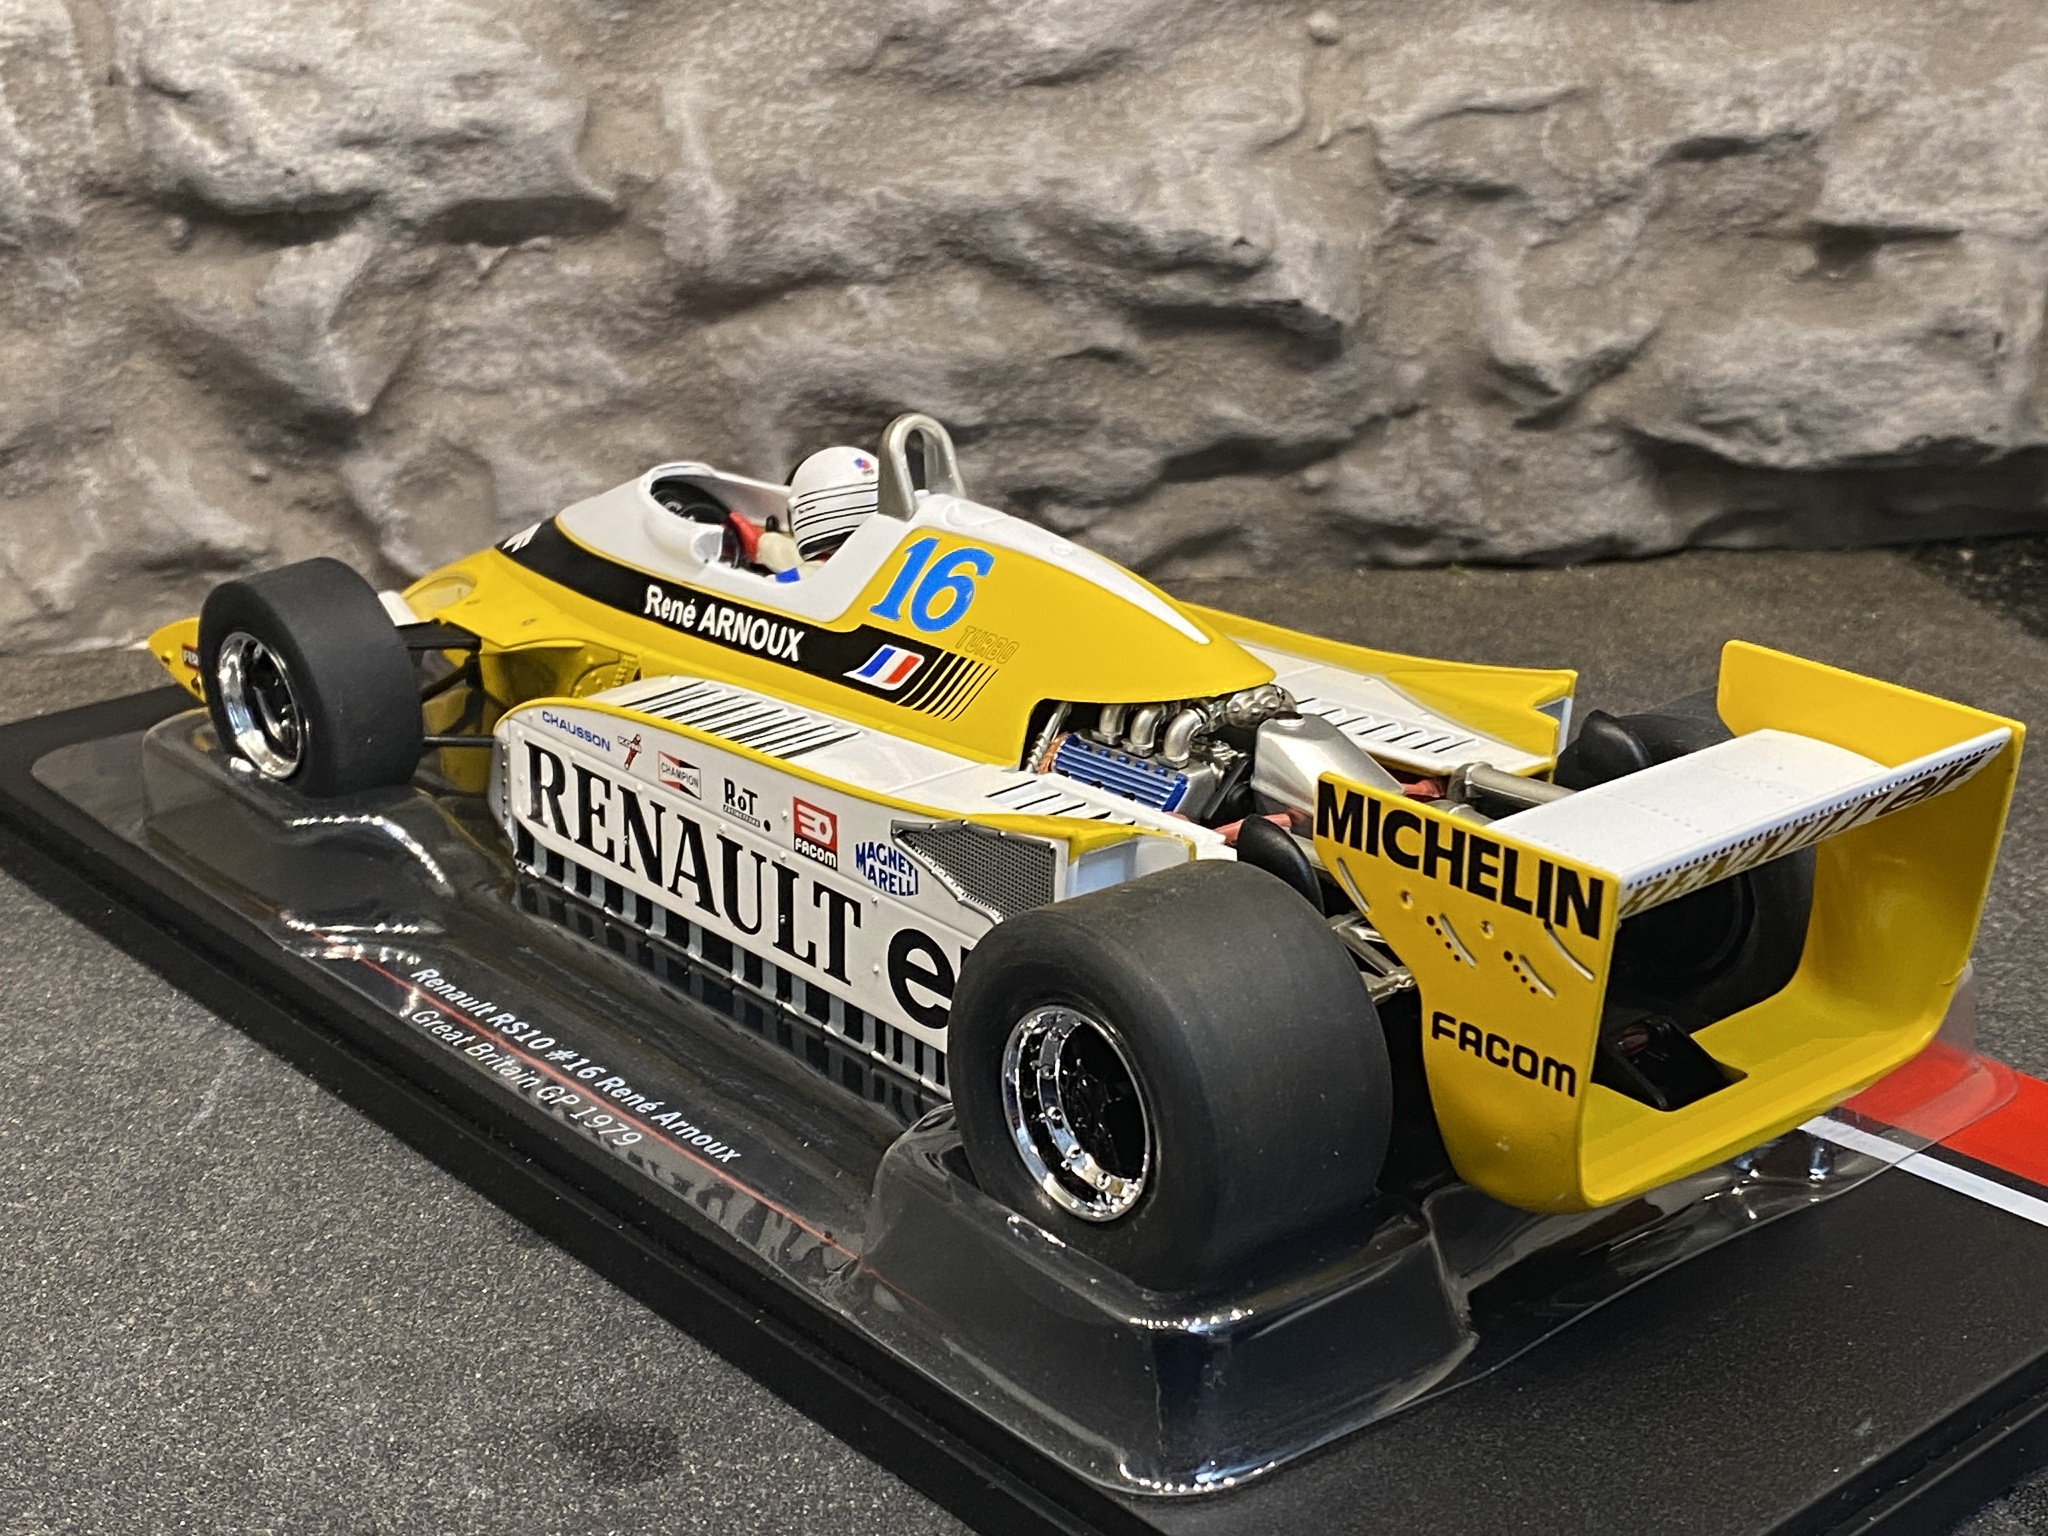 Skala 1/18 Renault RS10 #16 Rene Arnoux Great Britain GP 1979 fr MCG